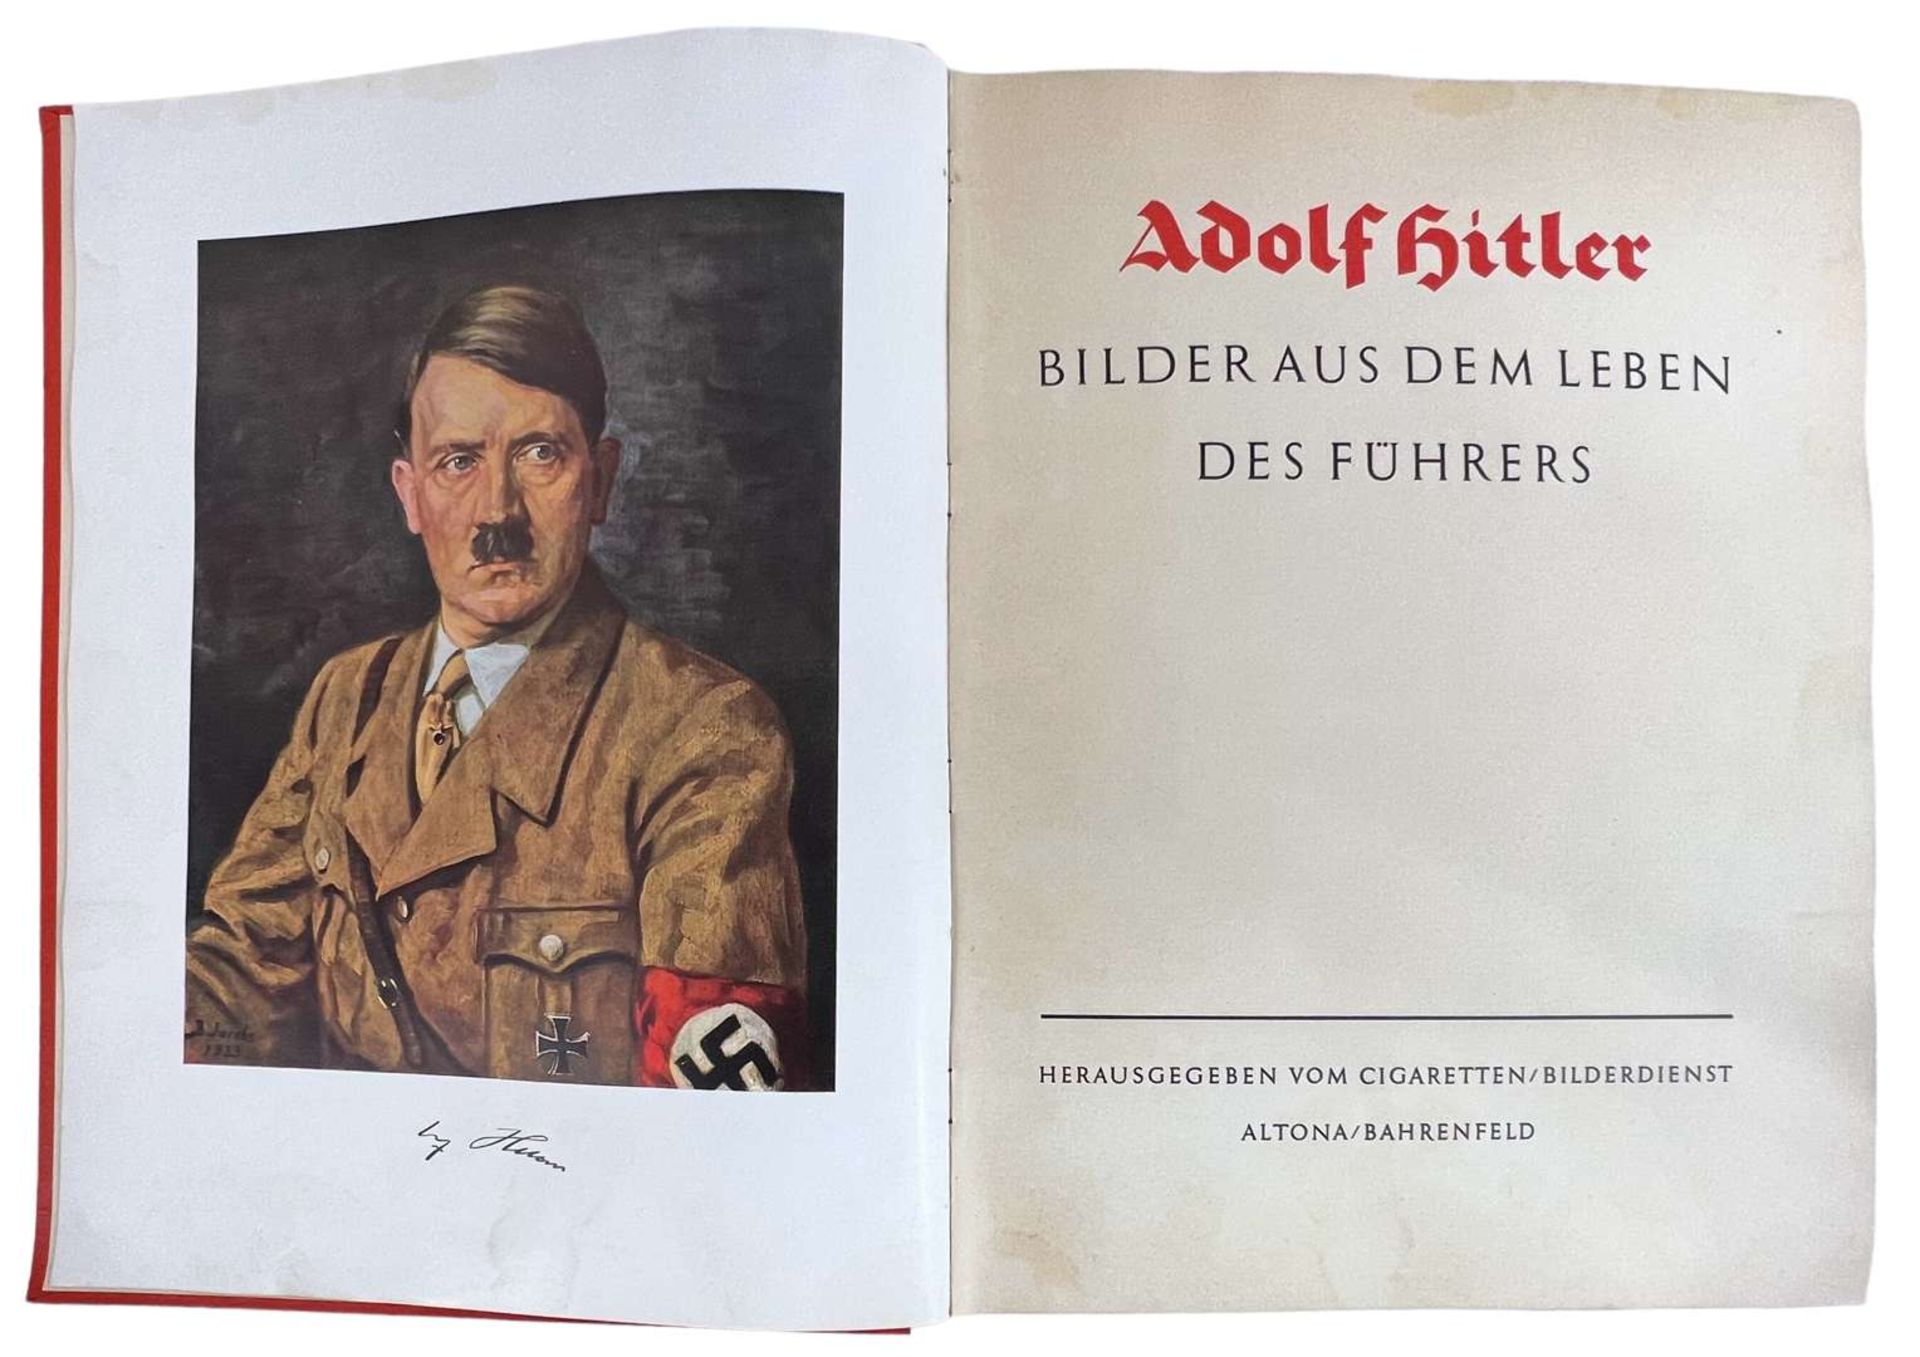 III German Reich Book "Adolf Hitler. Bilder aus dem Leben des Fuhrers", 1936 - Image 5 of 9